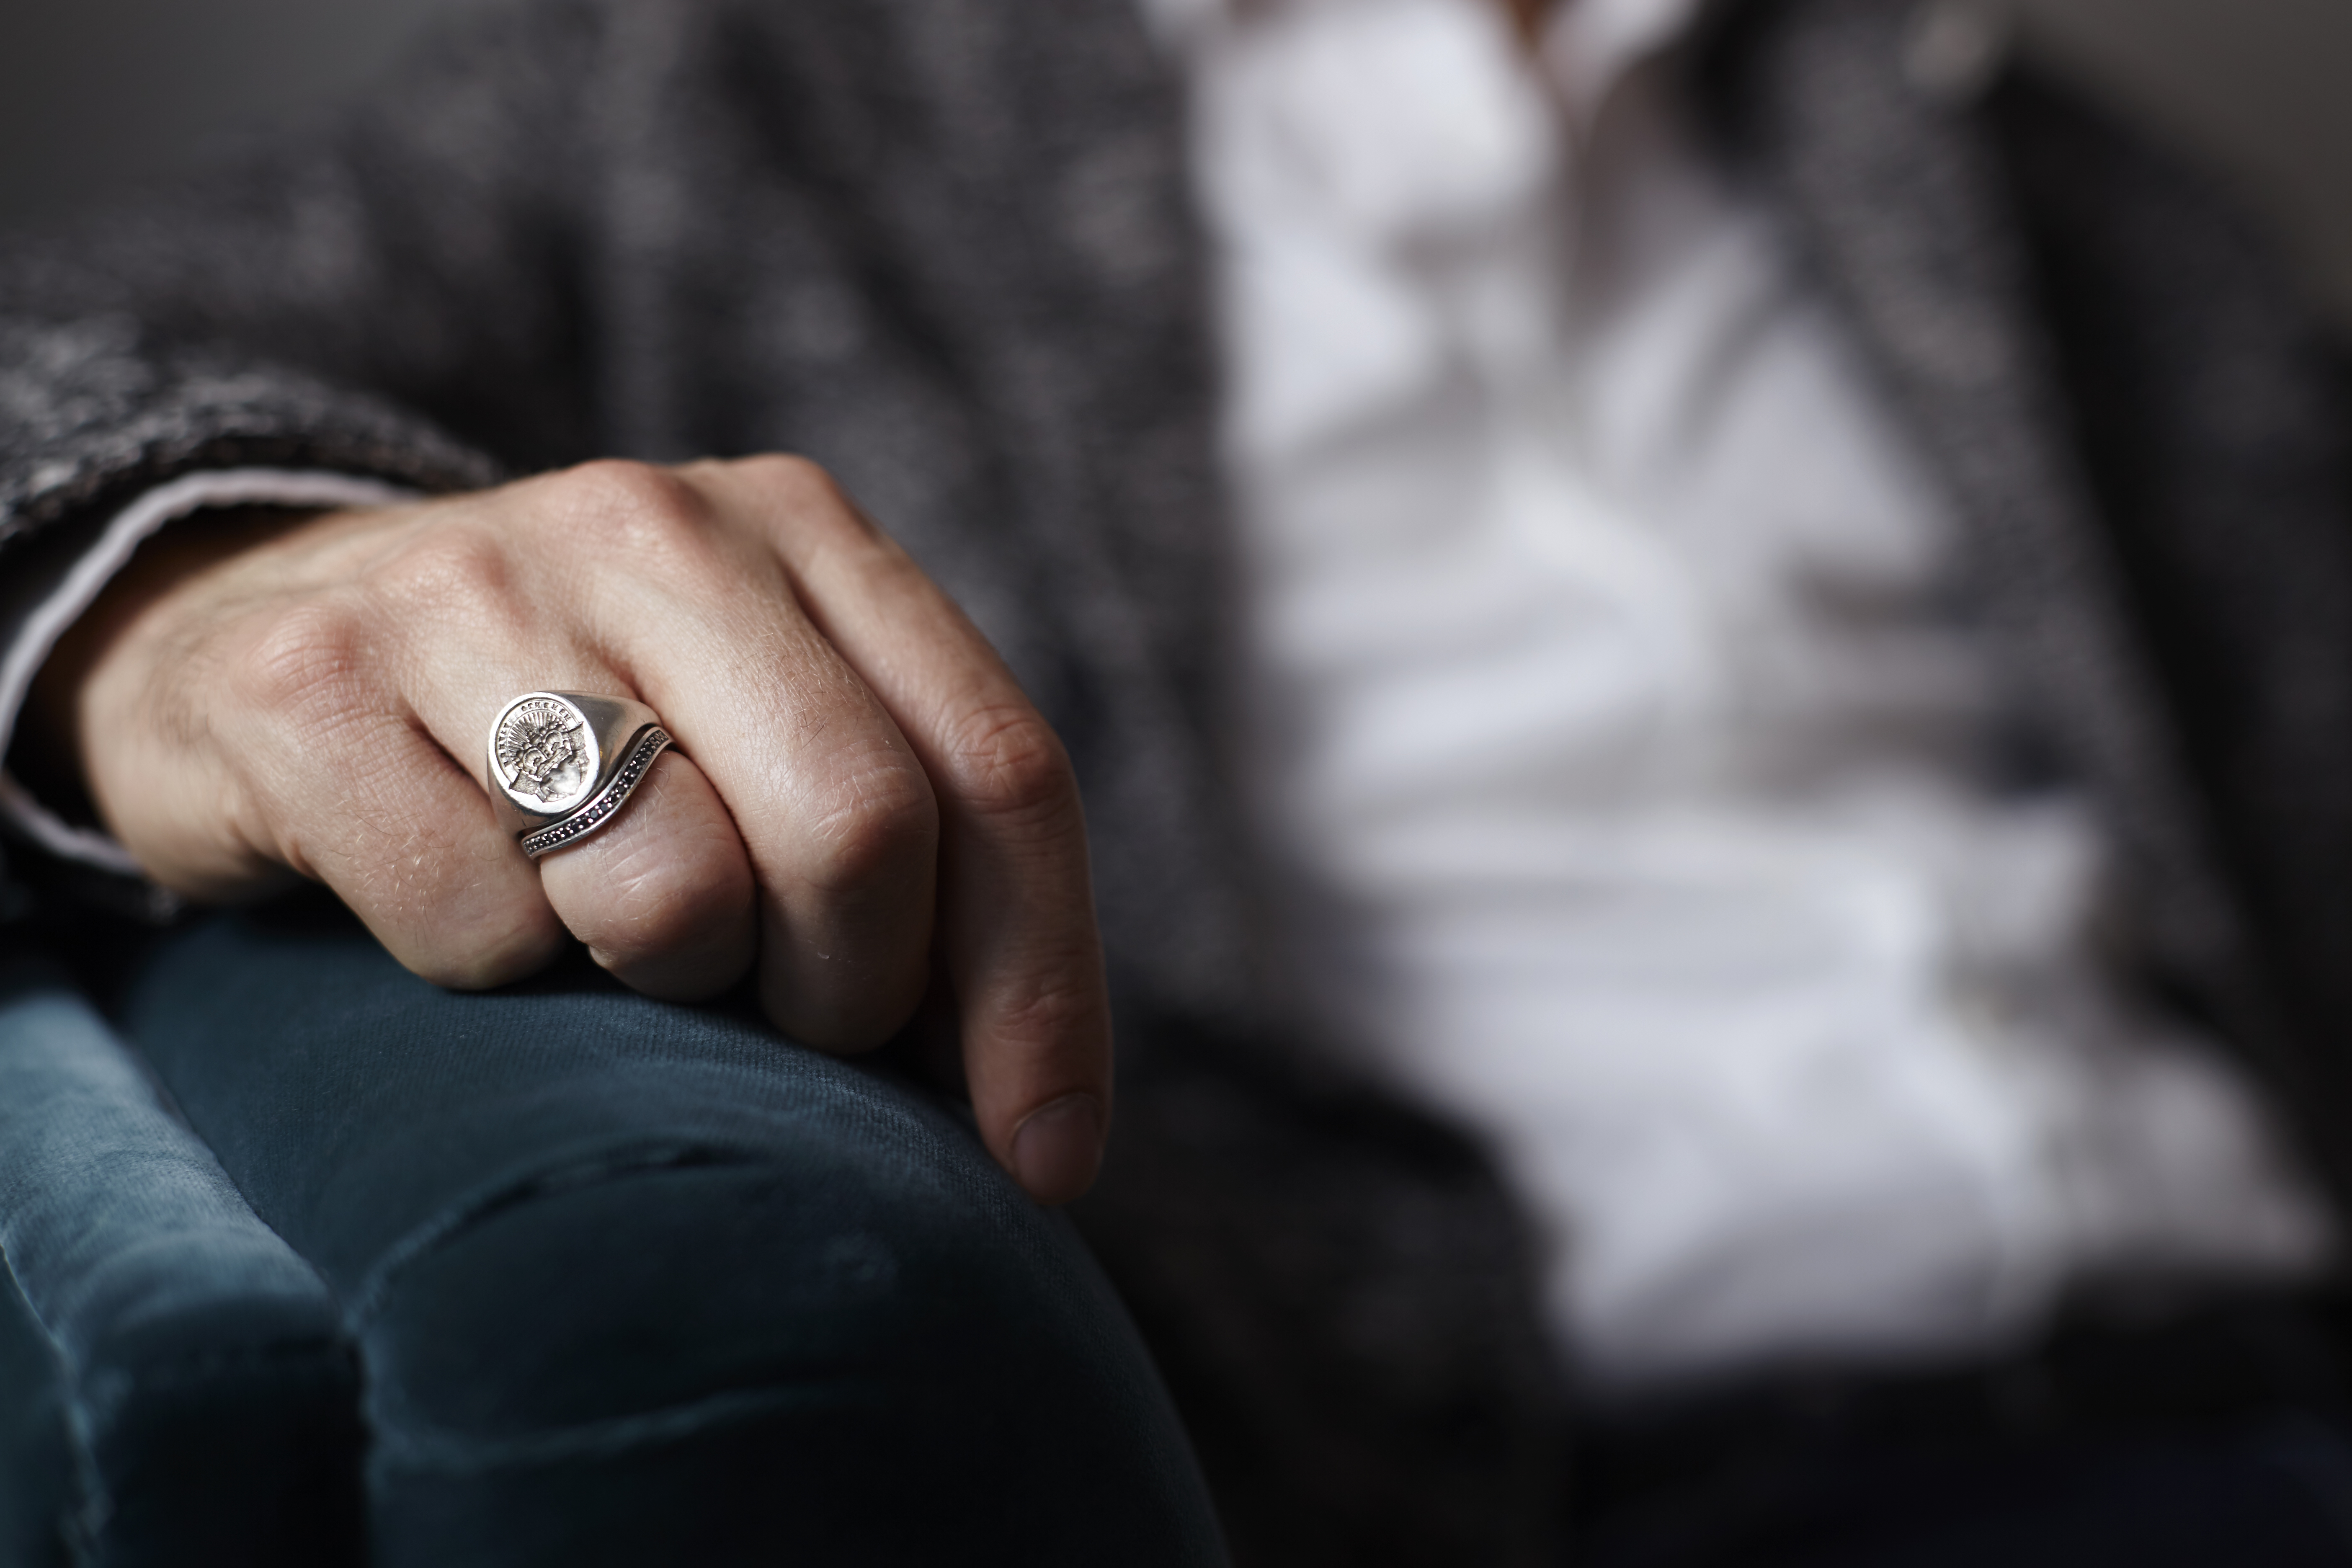 Печатка на палец мужская. Кольца Signet Ring. Мужские кольца на руке. Перстень на руке мужчины. Перстень на мезинецмужской.